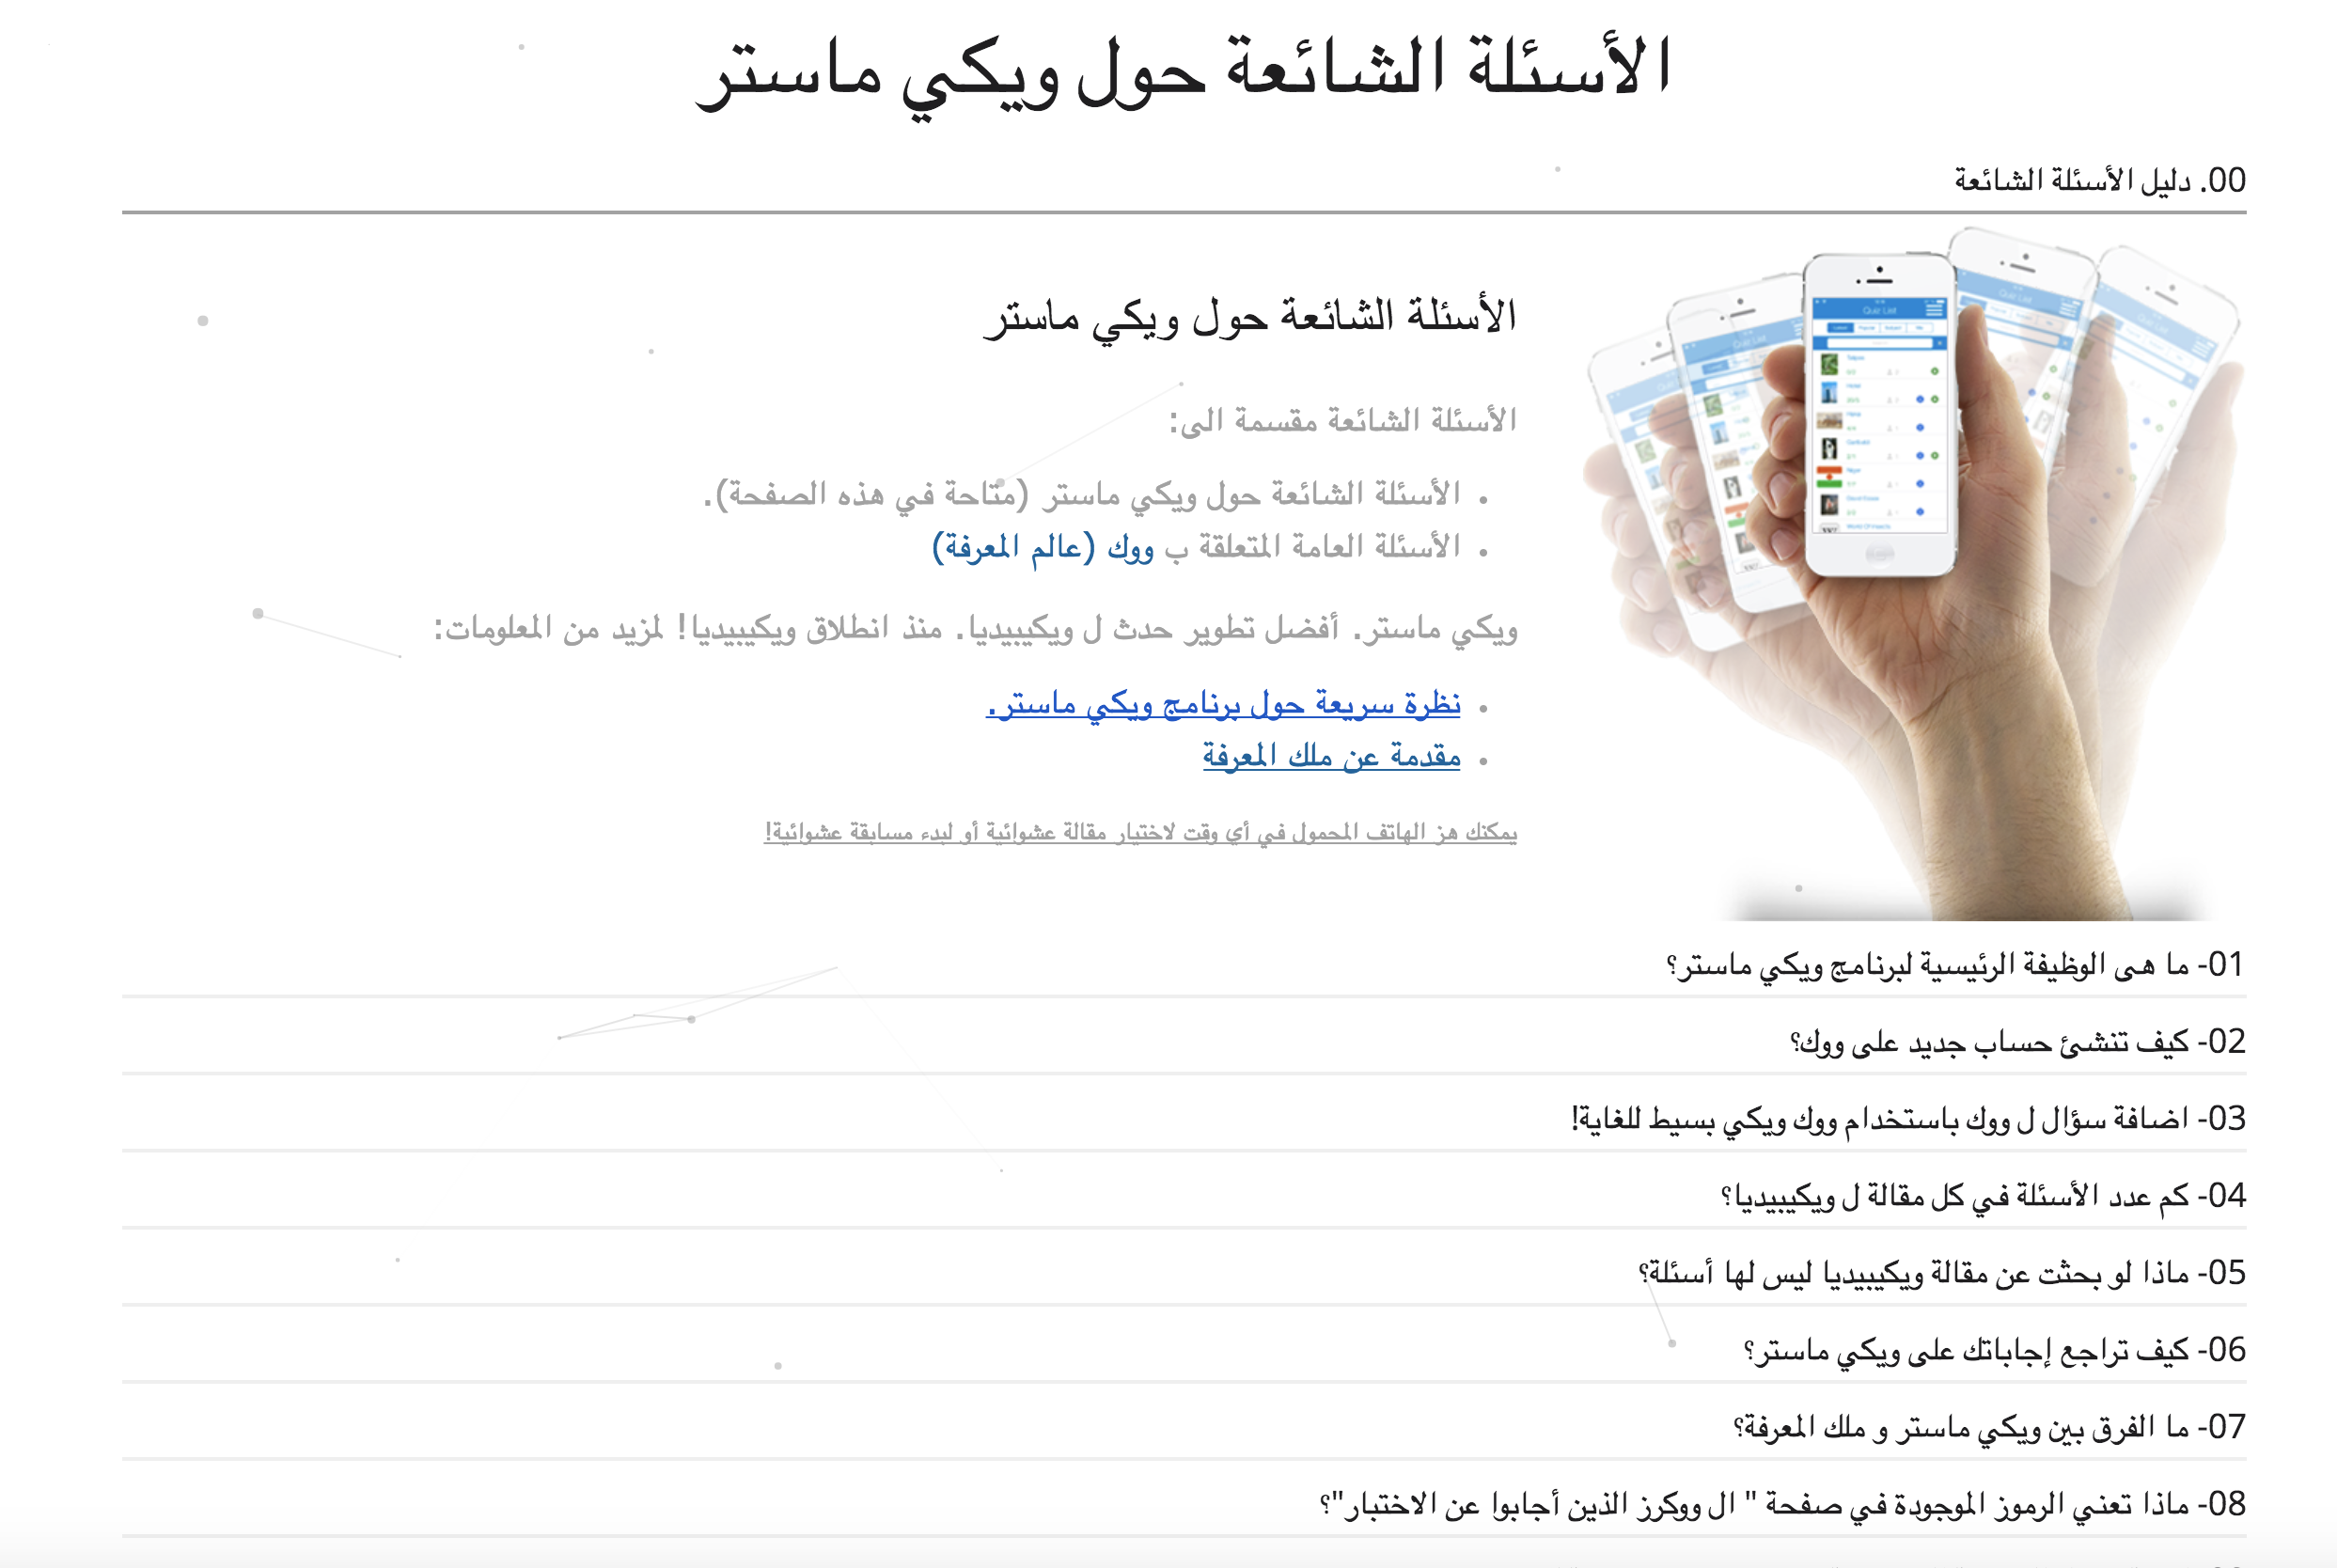 تم تحديث الأسئله الشائعه في اللغه العربيه عبر موقع ويكي ماستر